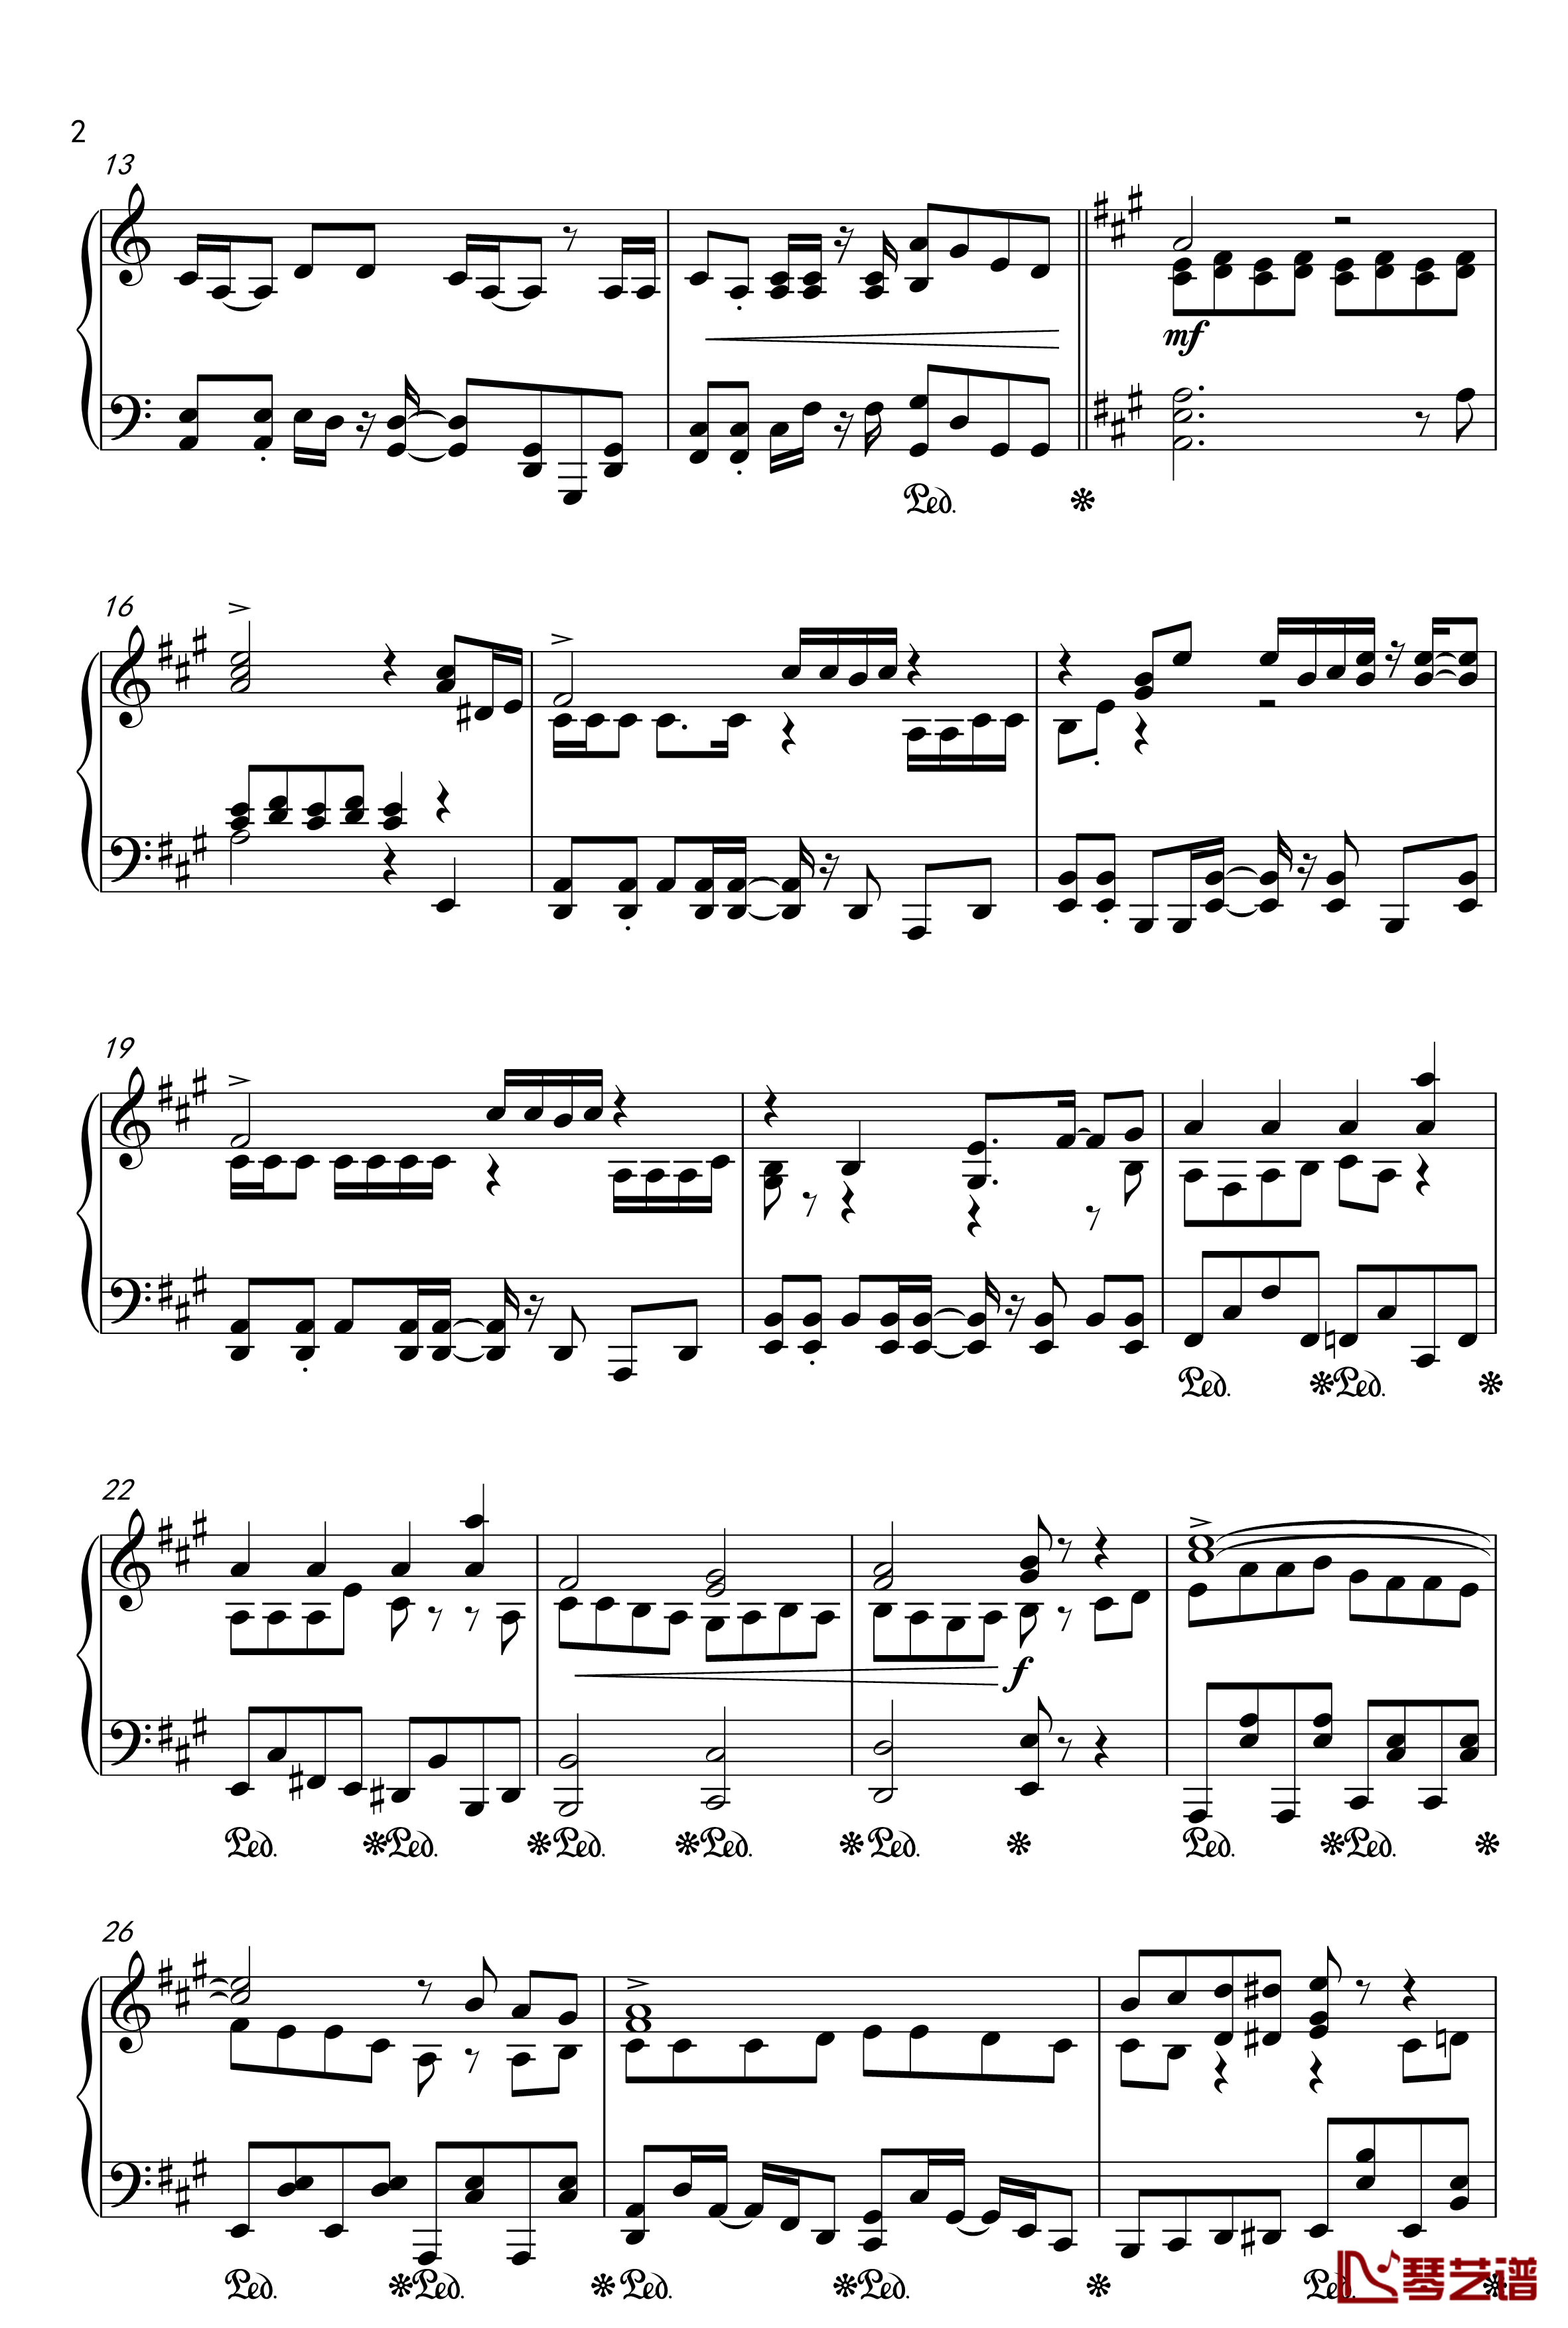 目标是神奇宝贝大师钢琴谱-20周年纪念版2